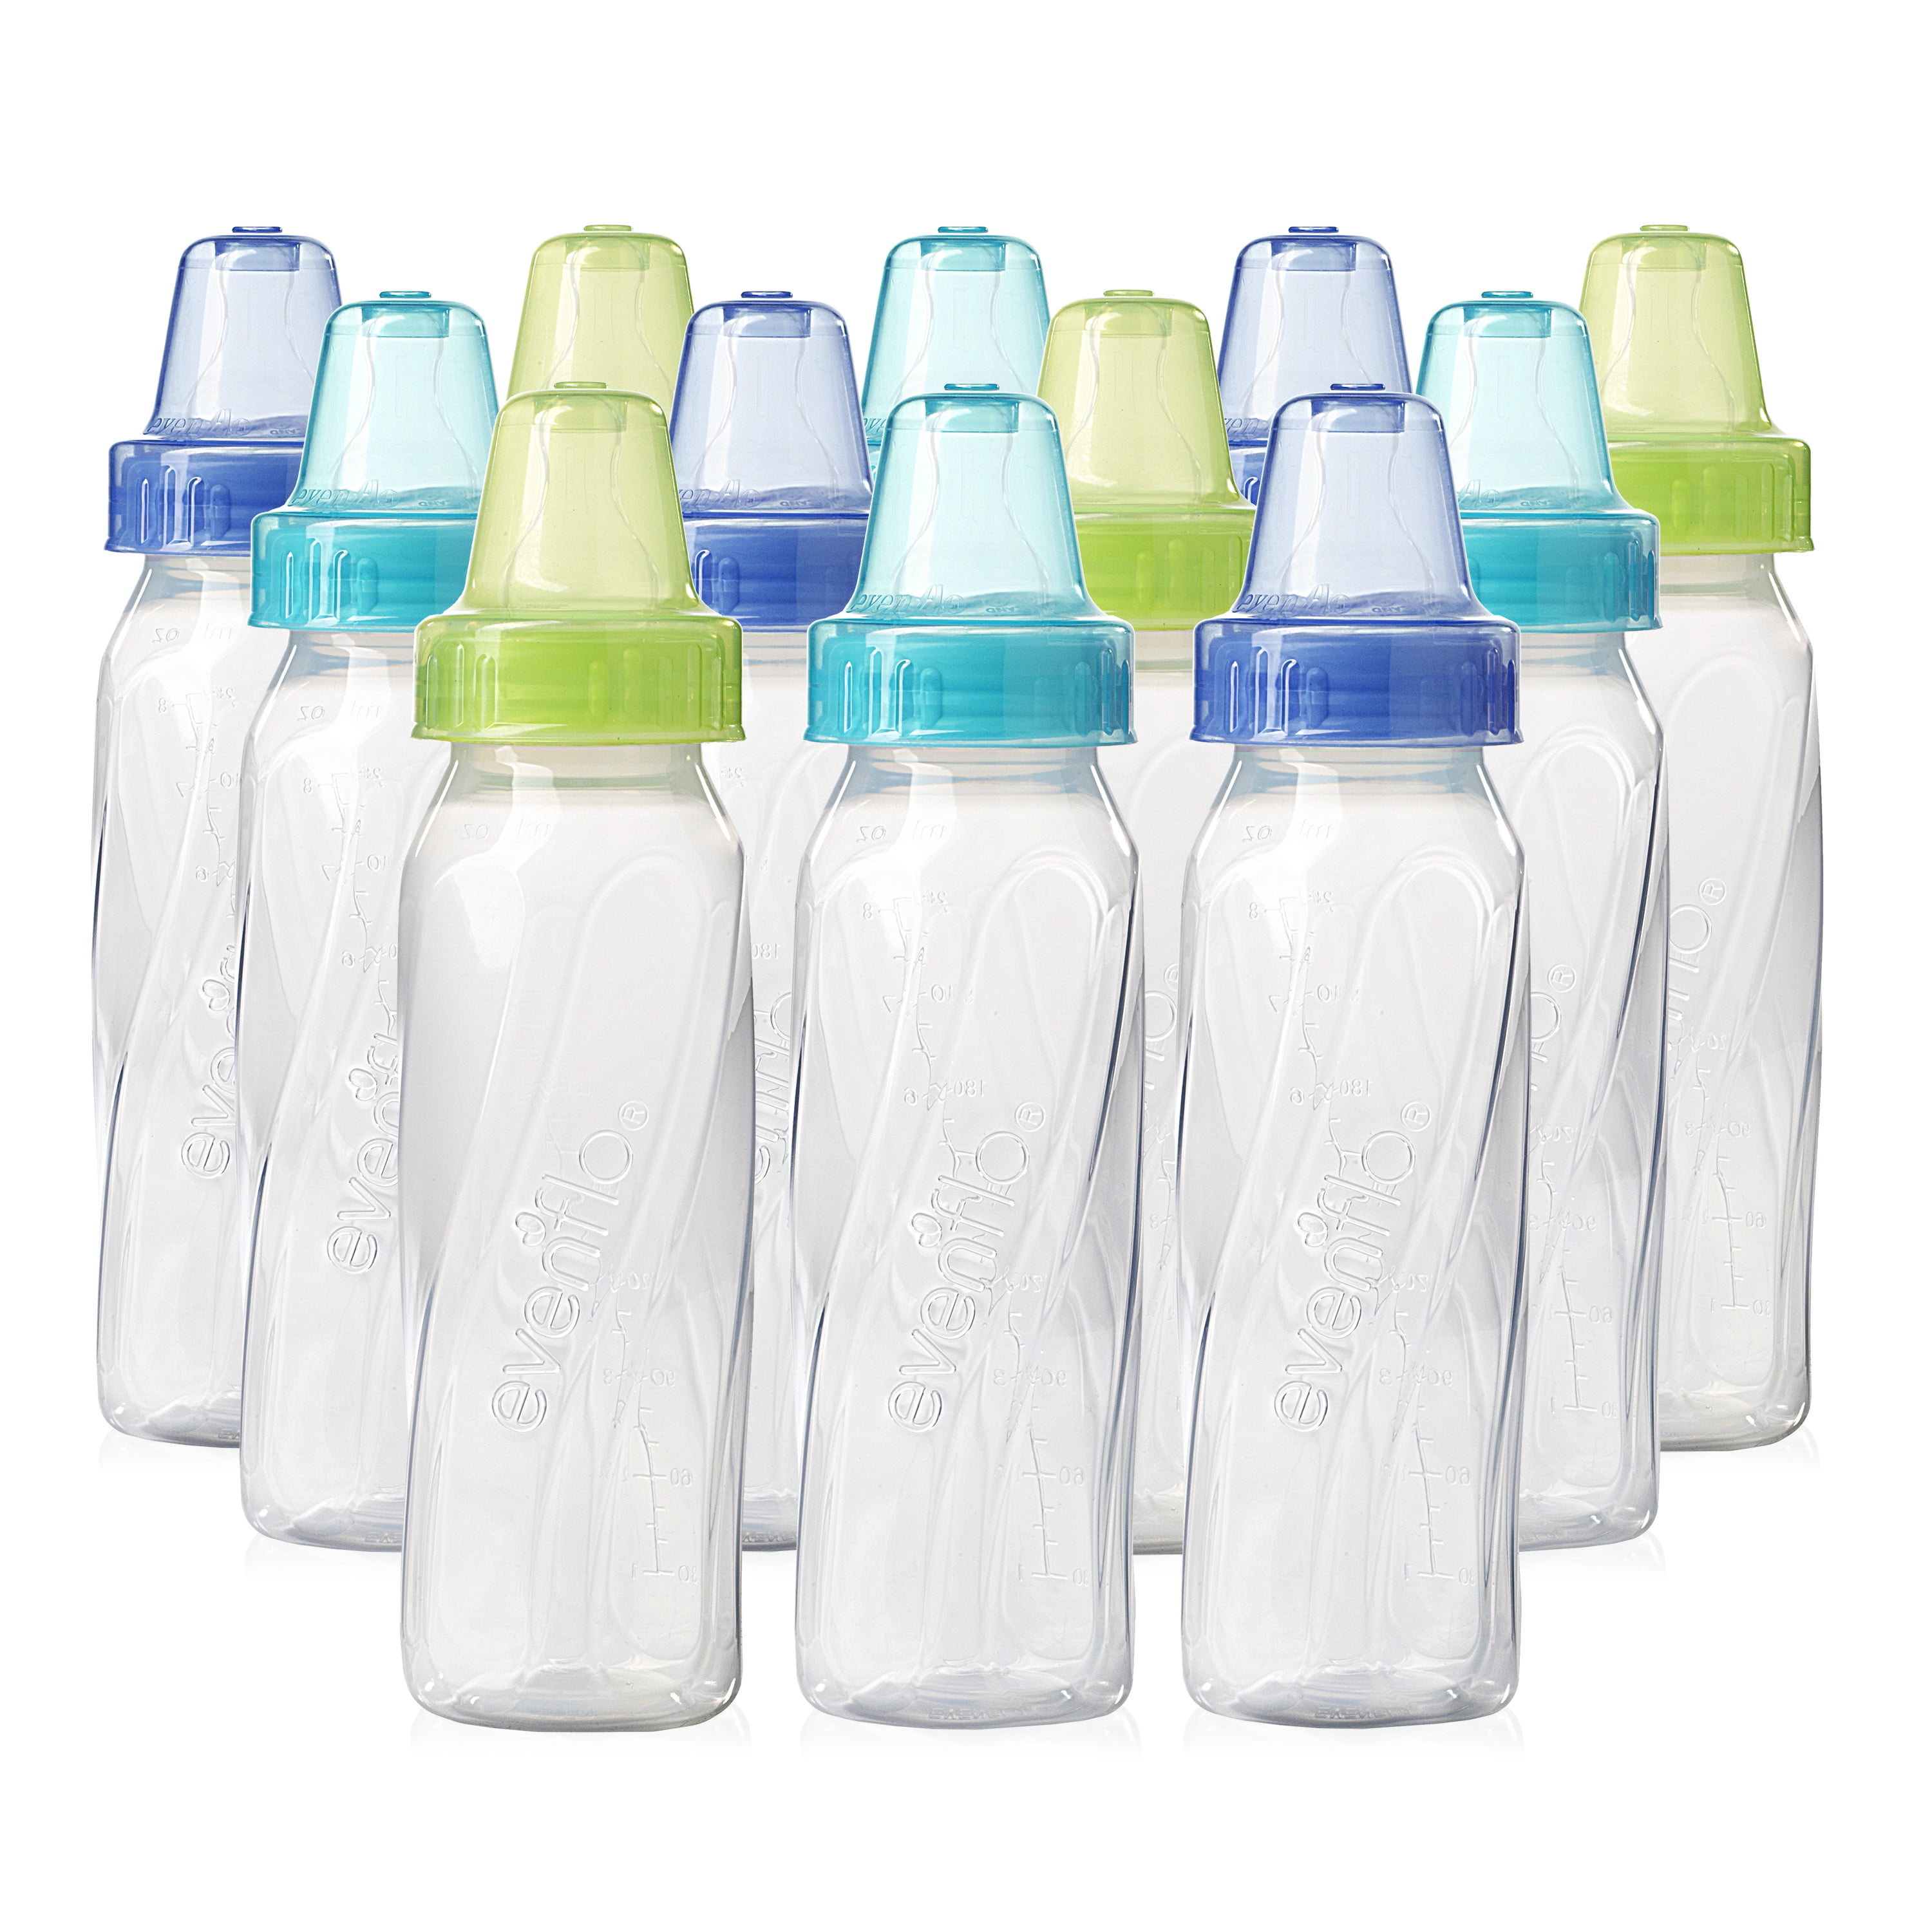 evenflo baby bottles